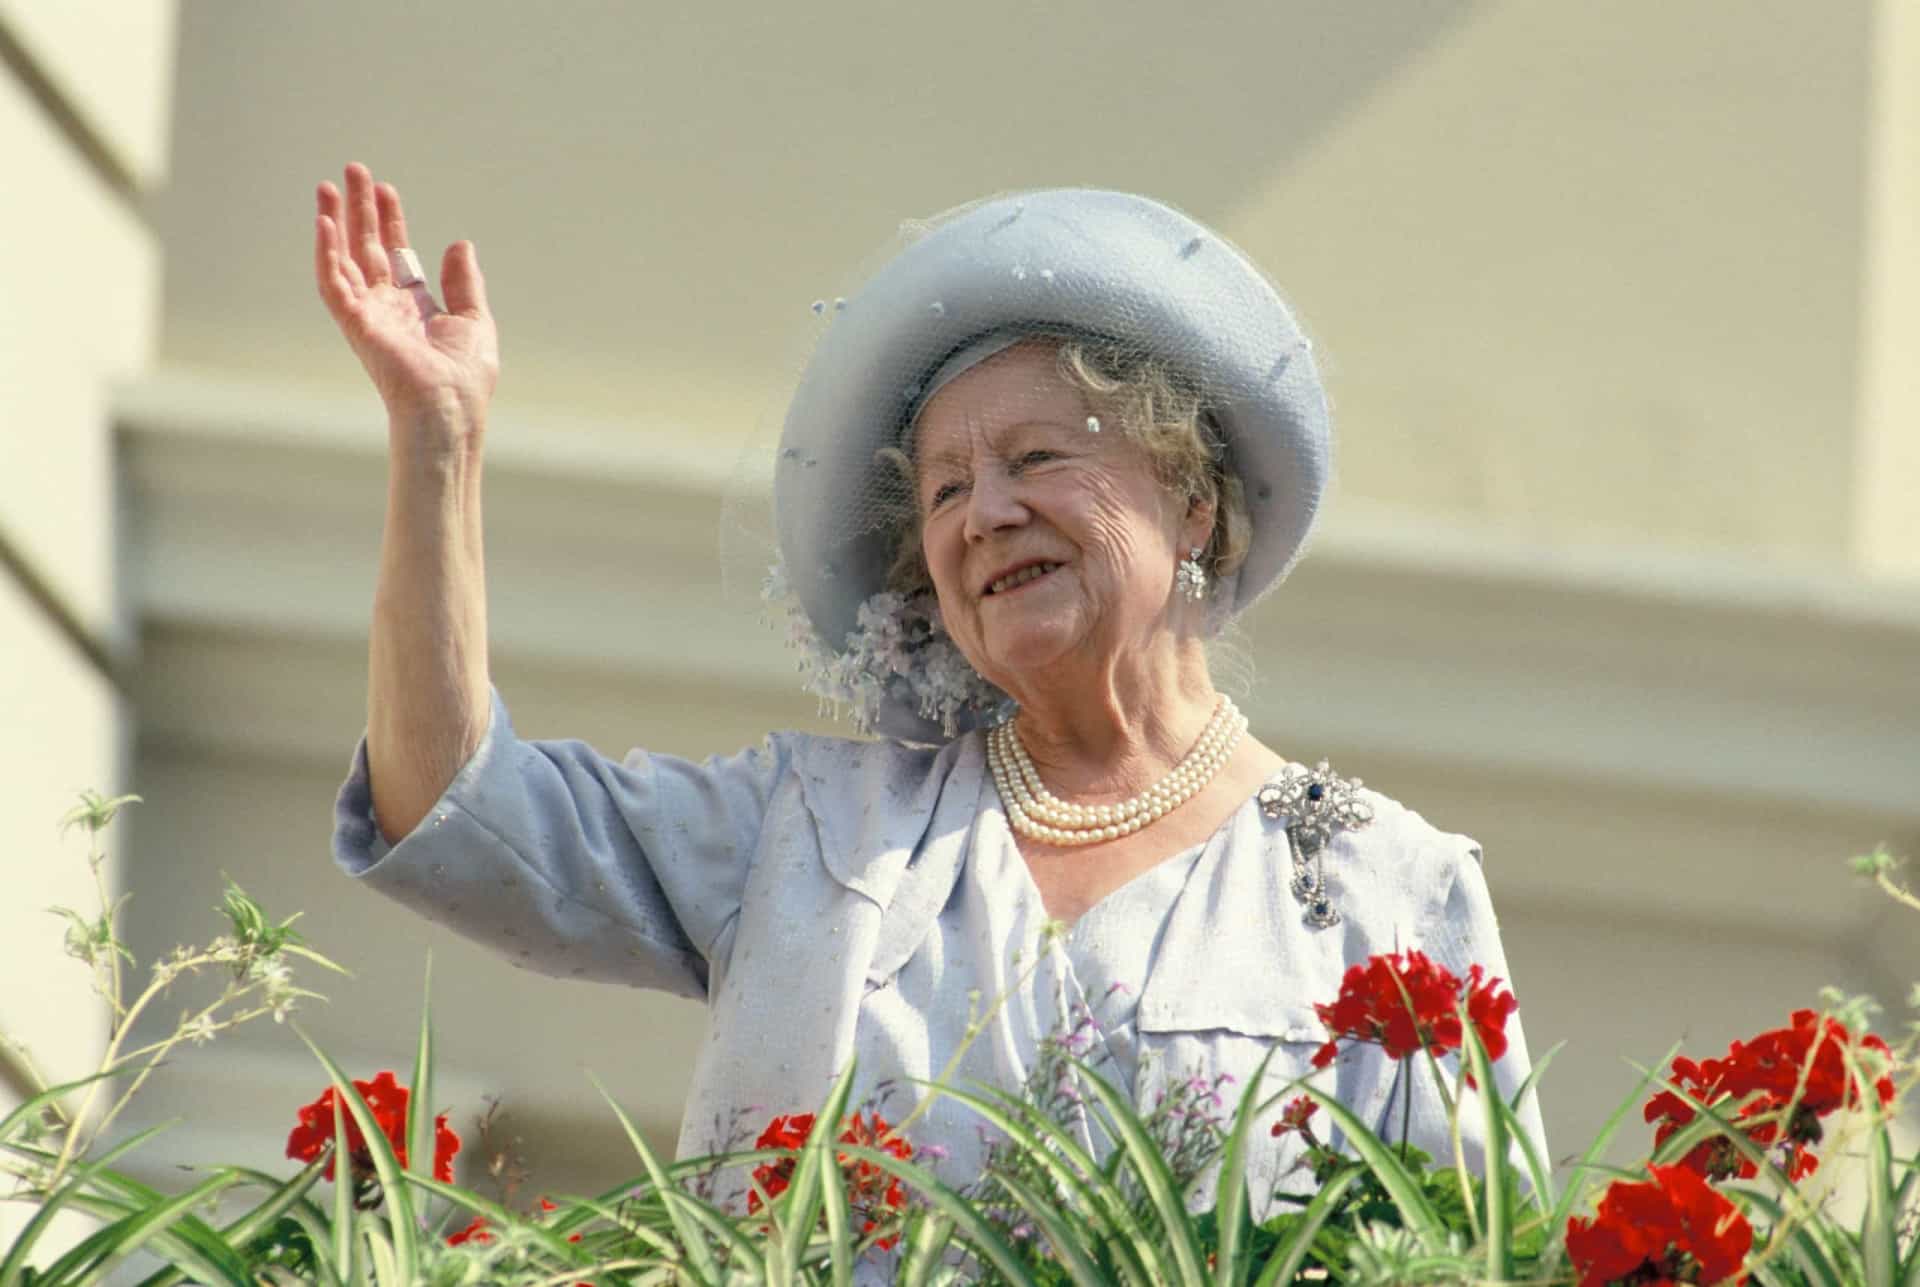 <p>La Reina Madre murió en marzo de 2002 en el Royal Lodge del Windsor Great Park a los 101 años.</p><p>También te puede interesar:<a href="https://www.starsinsider.com/n/440405?utm_source=msn.com&utm_medium=display&utm_campaign=referral_description&utm_content=491712es-cl"> ¿Qué ocurriría si el mundo dejase de girar?</a></p>